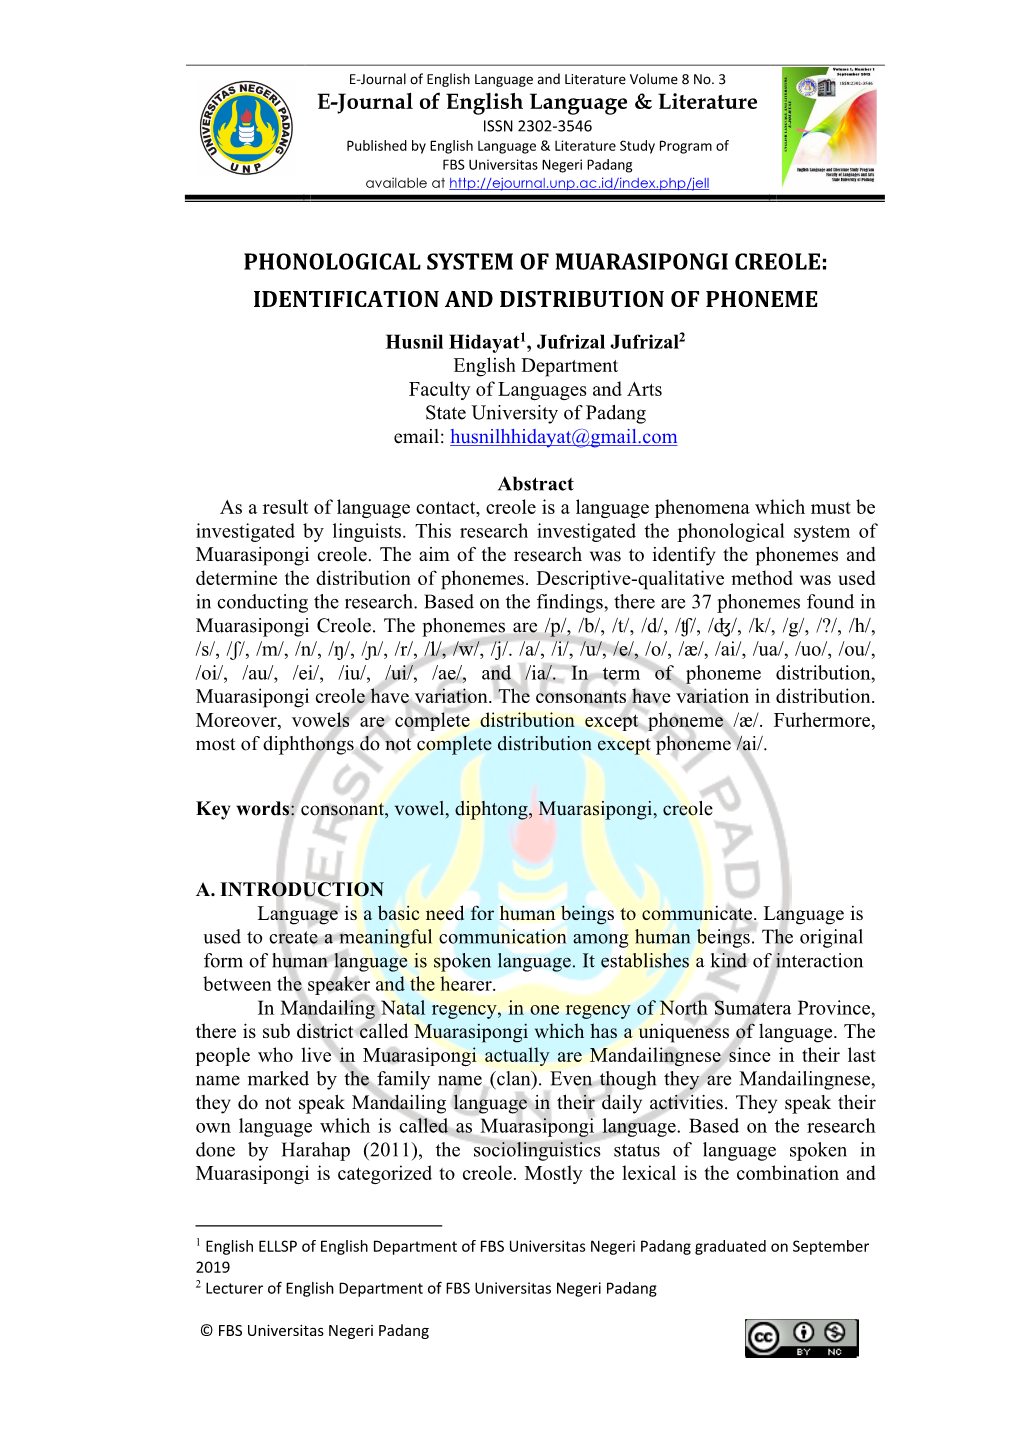 Phonological System of Muarasipongi Creole